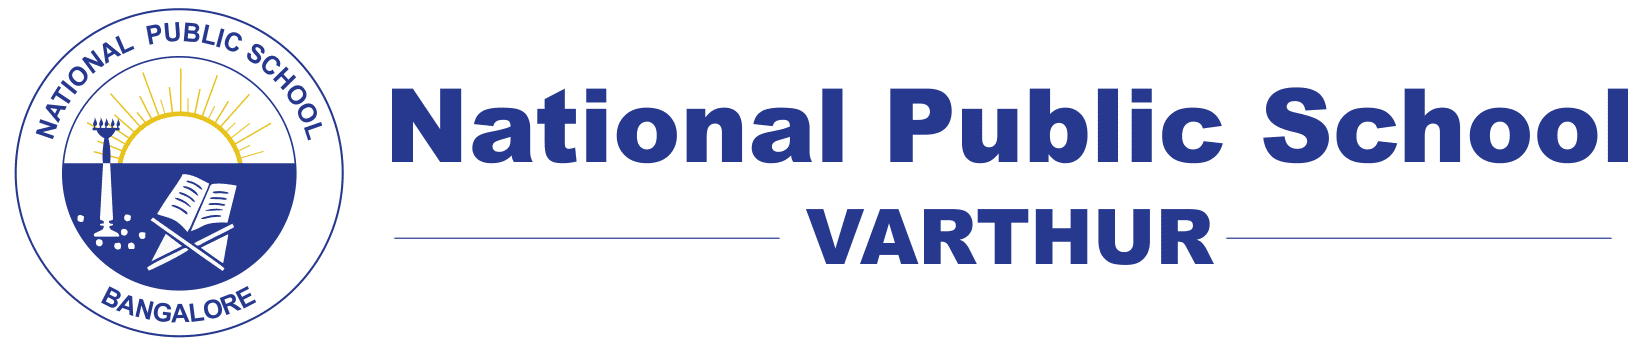 National Public School Varthur | NPS Varthur